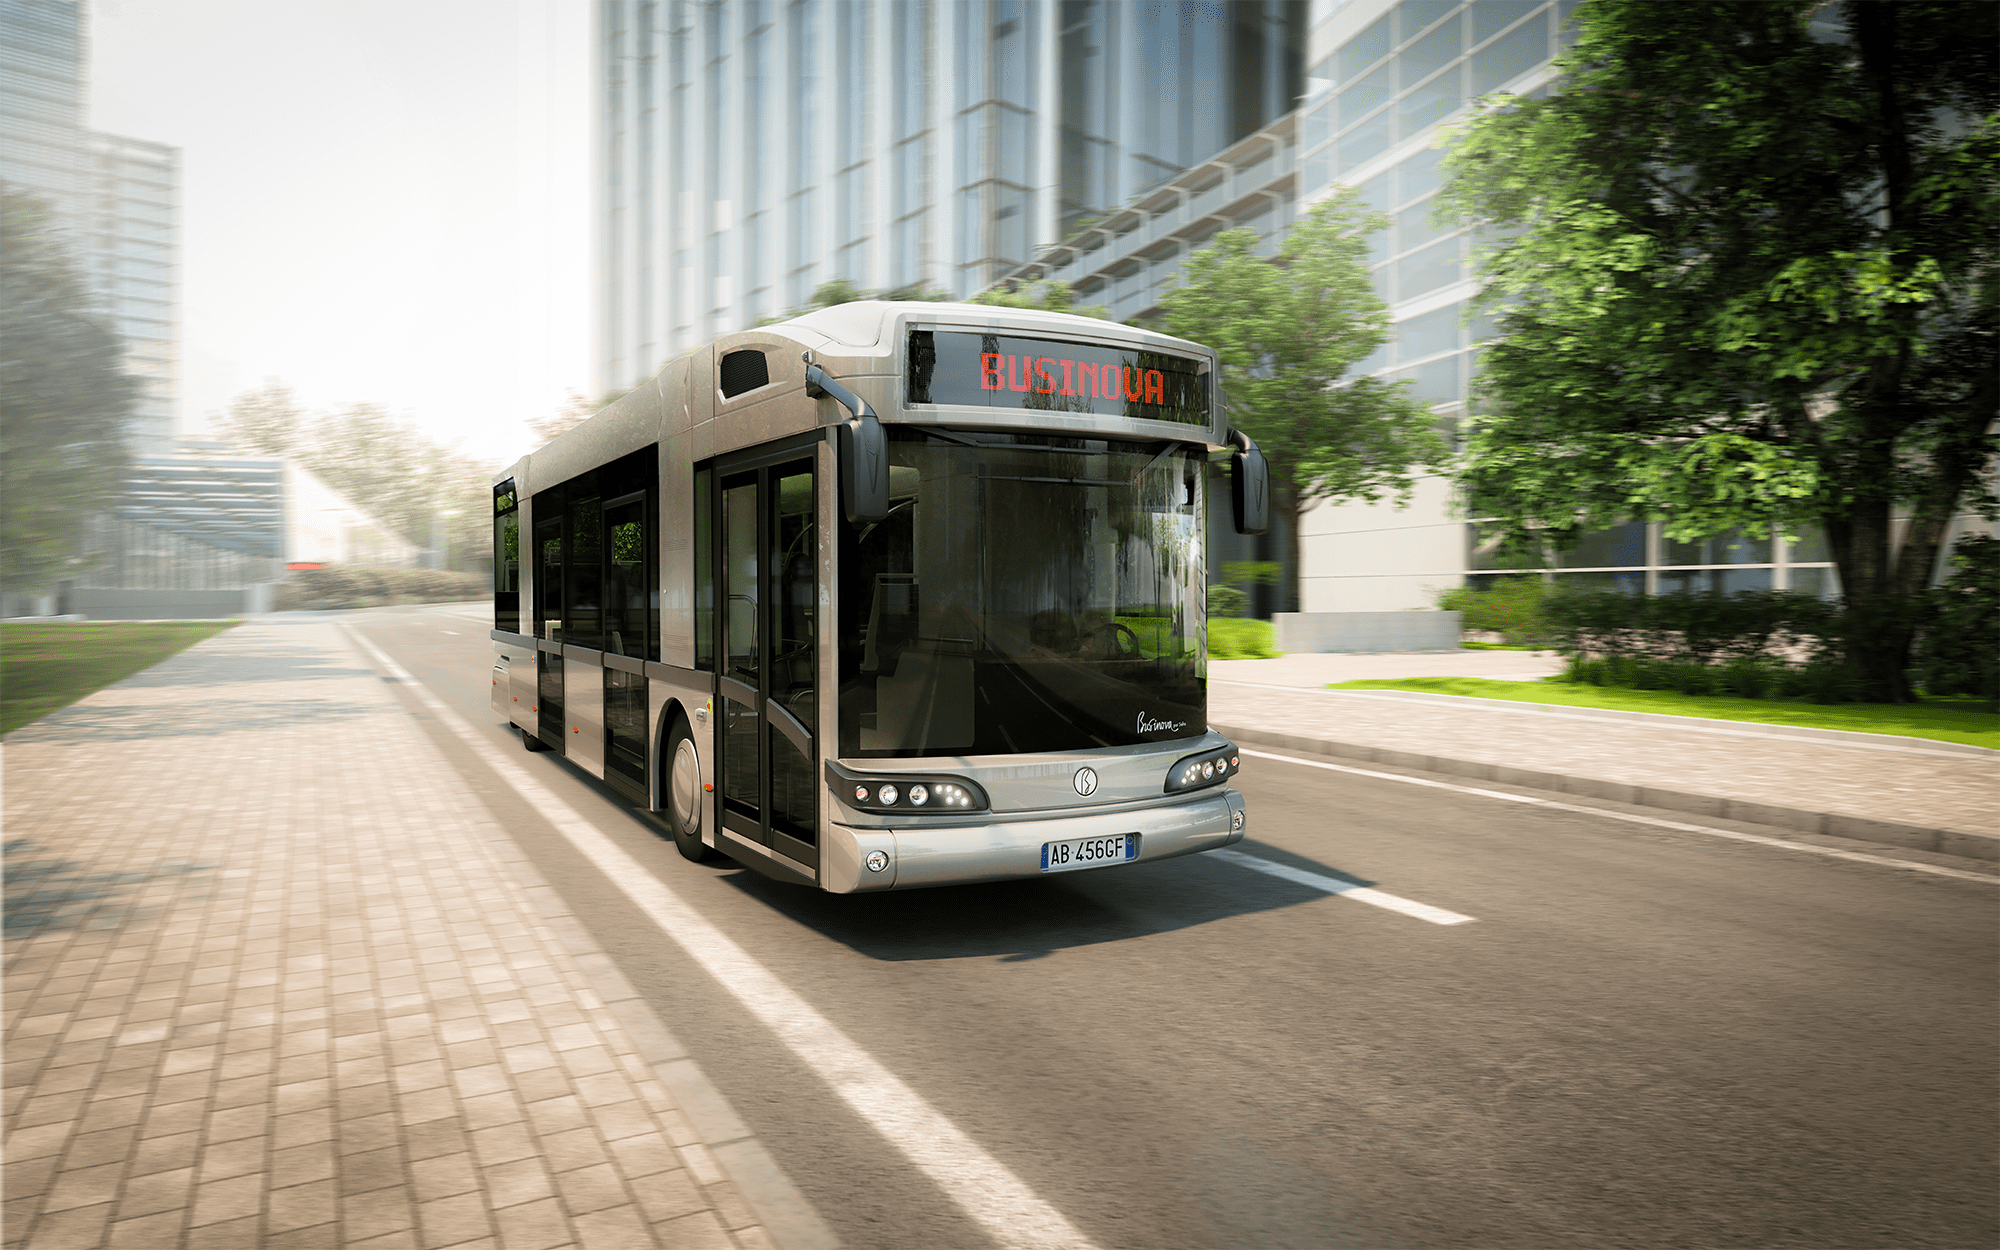 Montage photo d'un bus Businova roulant en ville